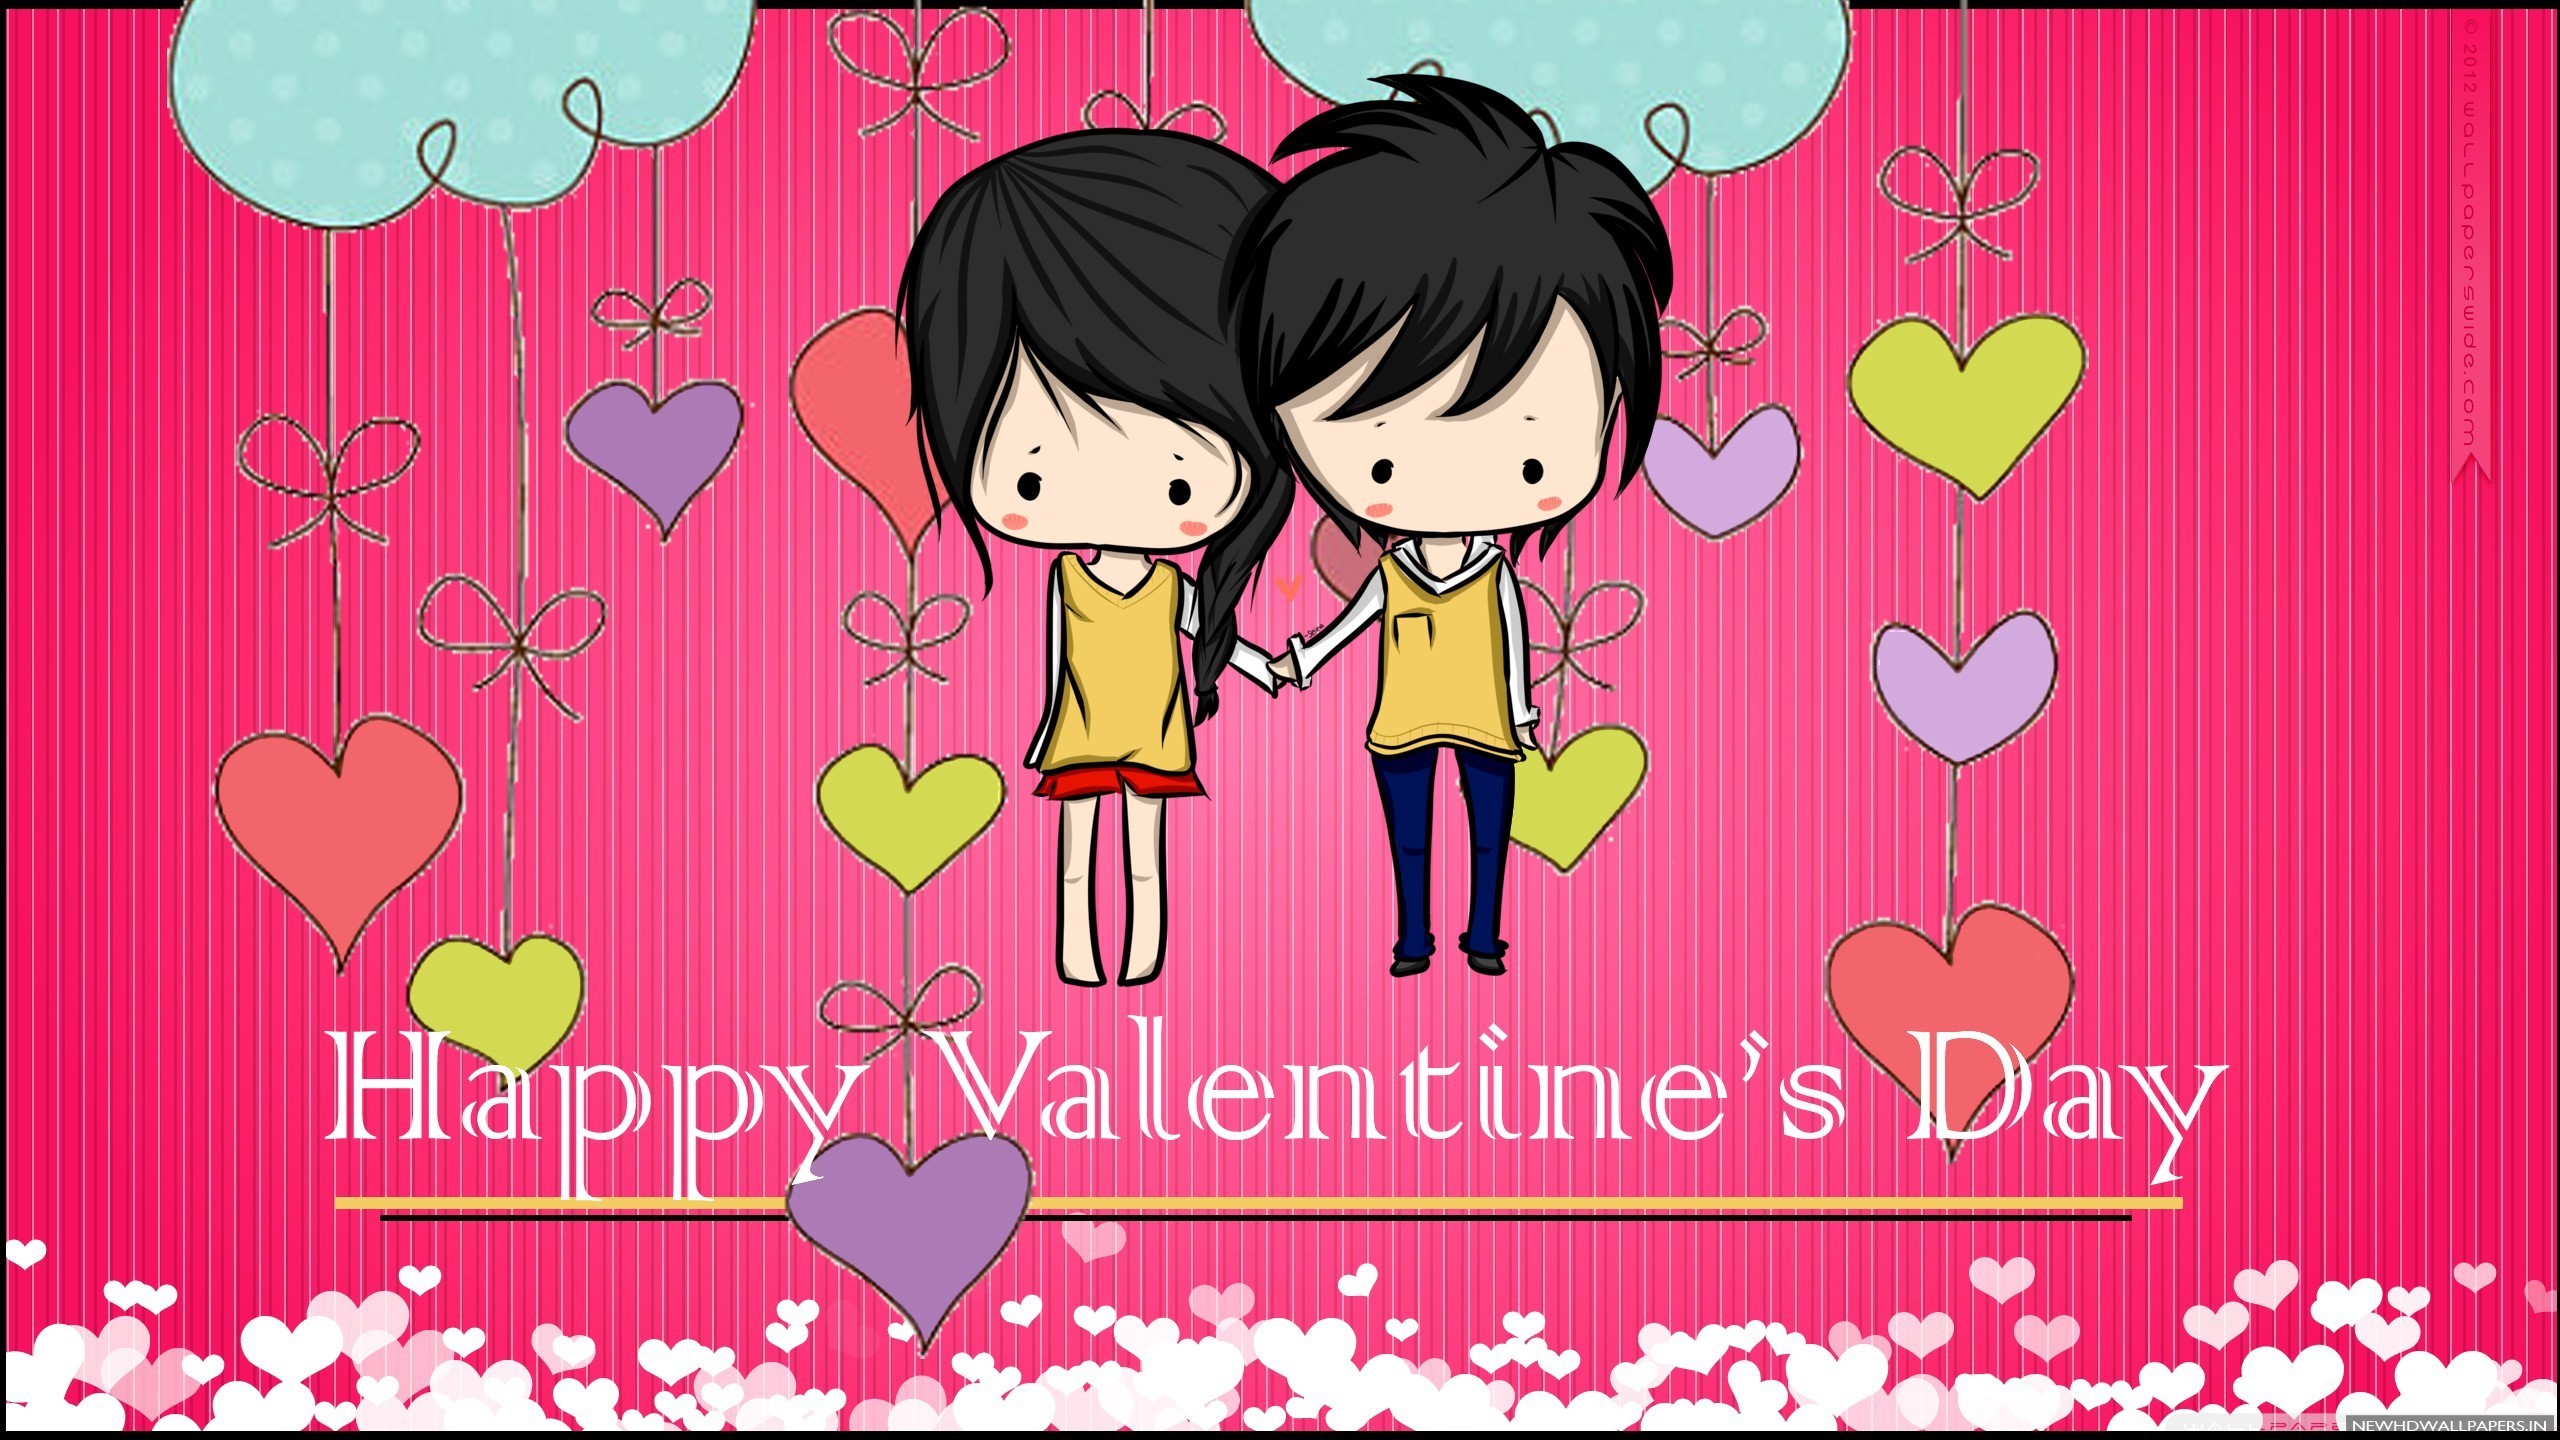 Happy Valentines Day Couple Anime Image